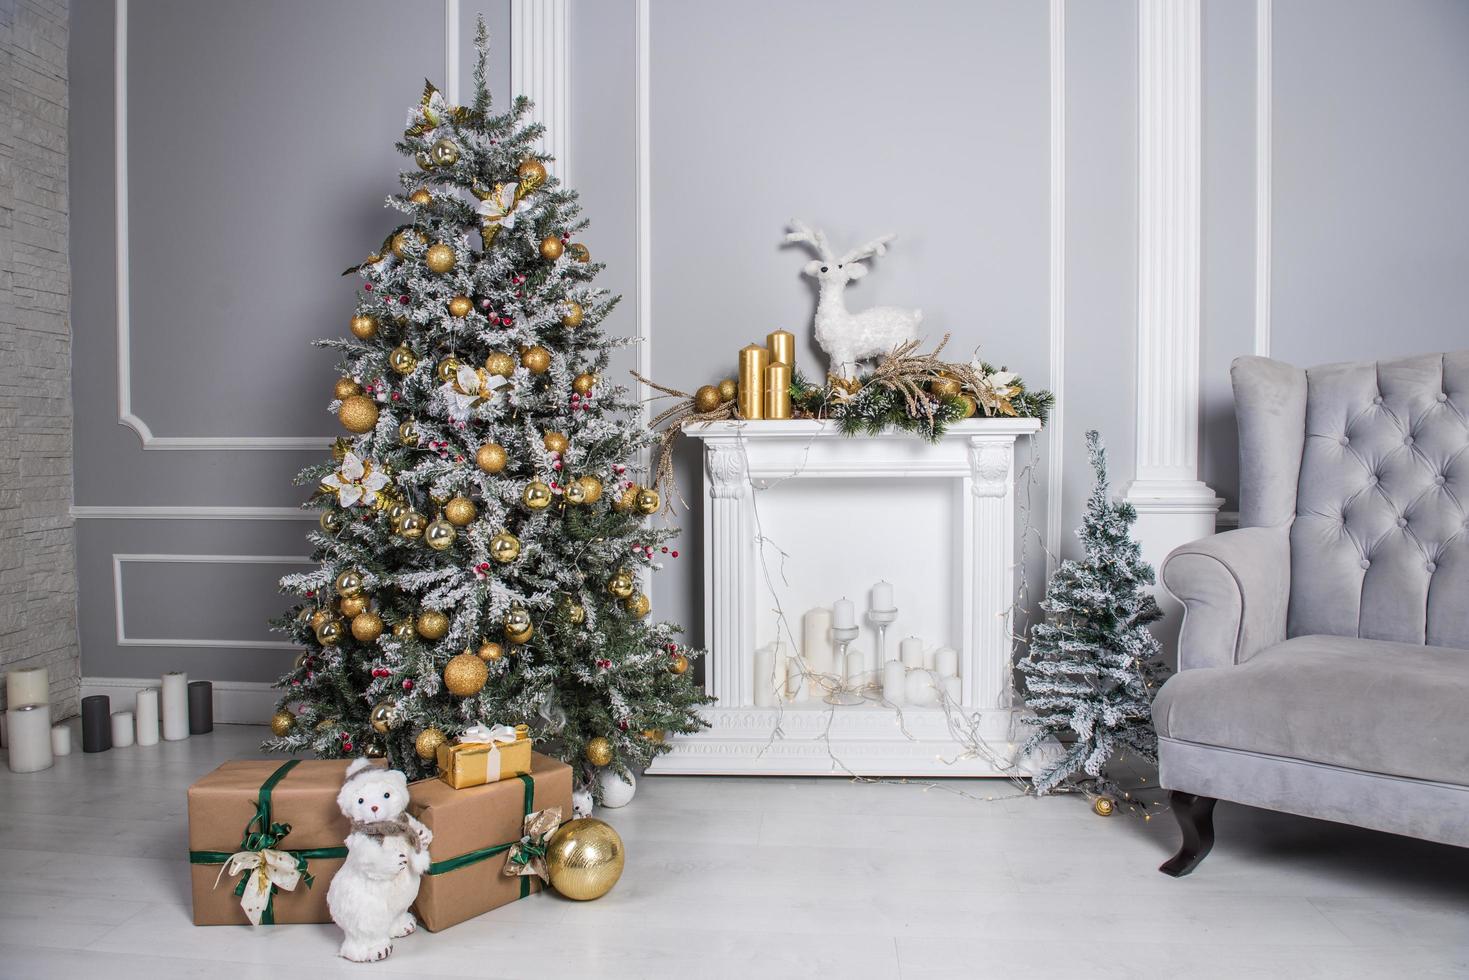 Wohnzimmer mit Weihnachtsbaum, Geschenken und Weihnachtsdekor dekoriert foto